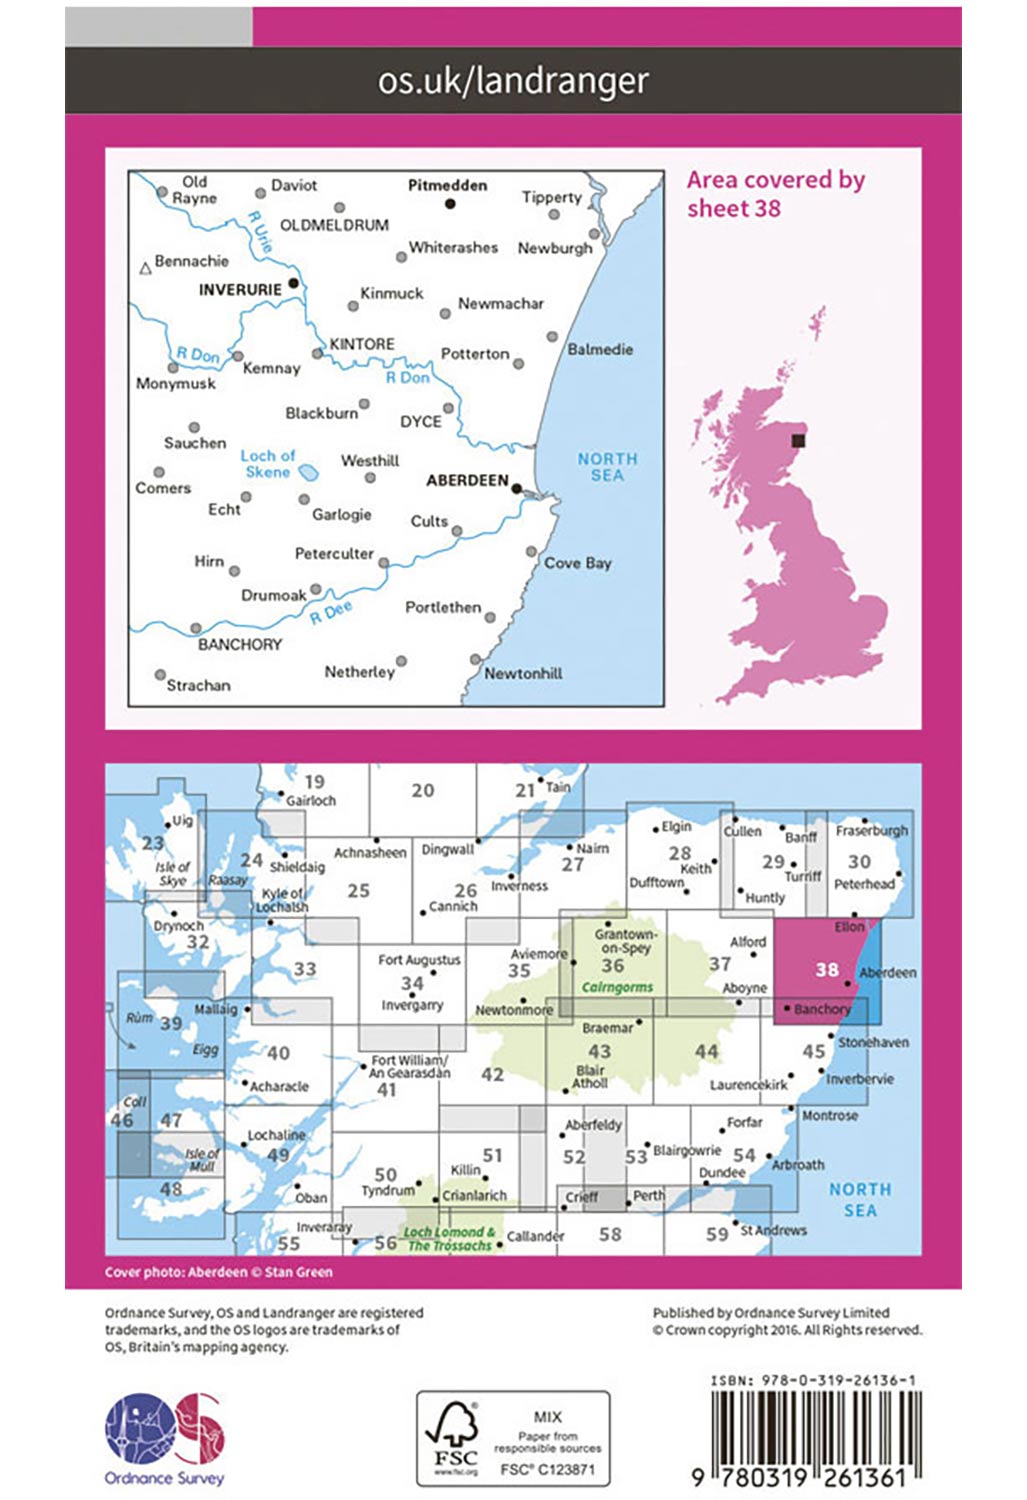 Ordnance Survey Aberdeen, Inverurie & Pitmedden - Landranger 38 Map